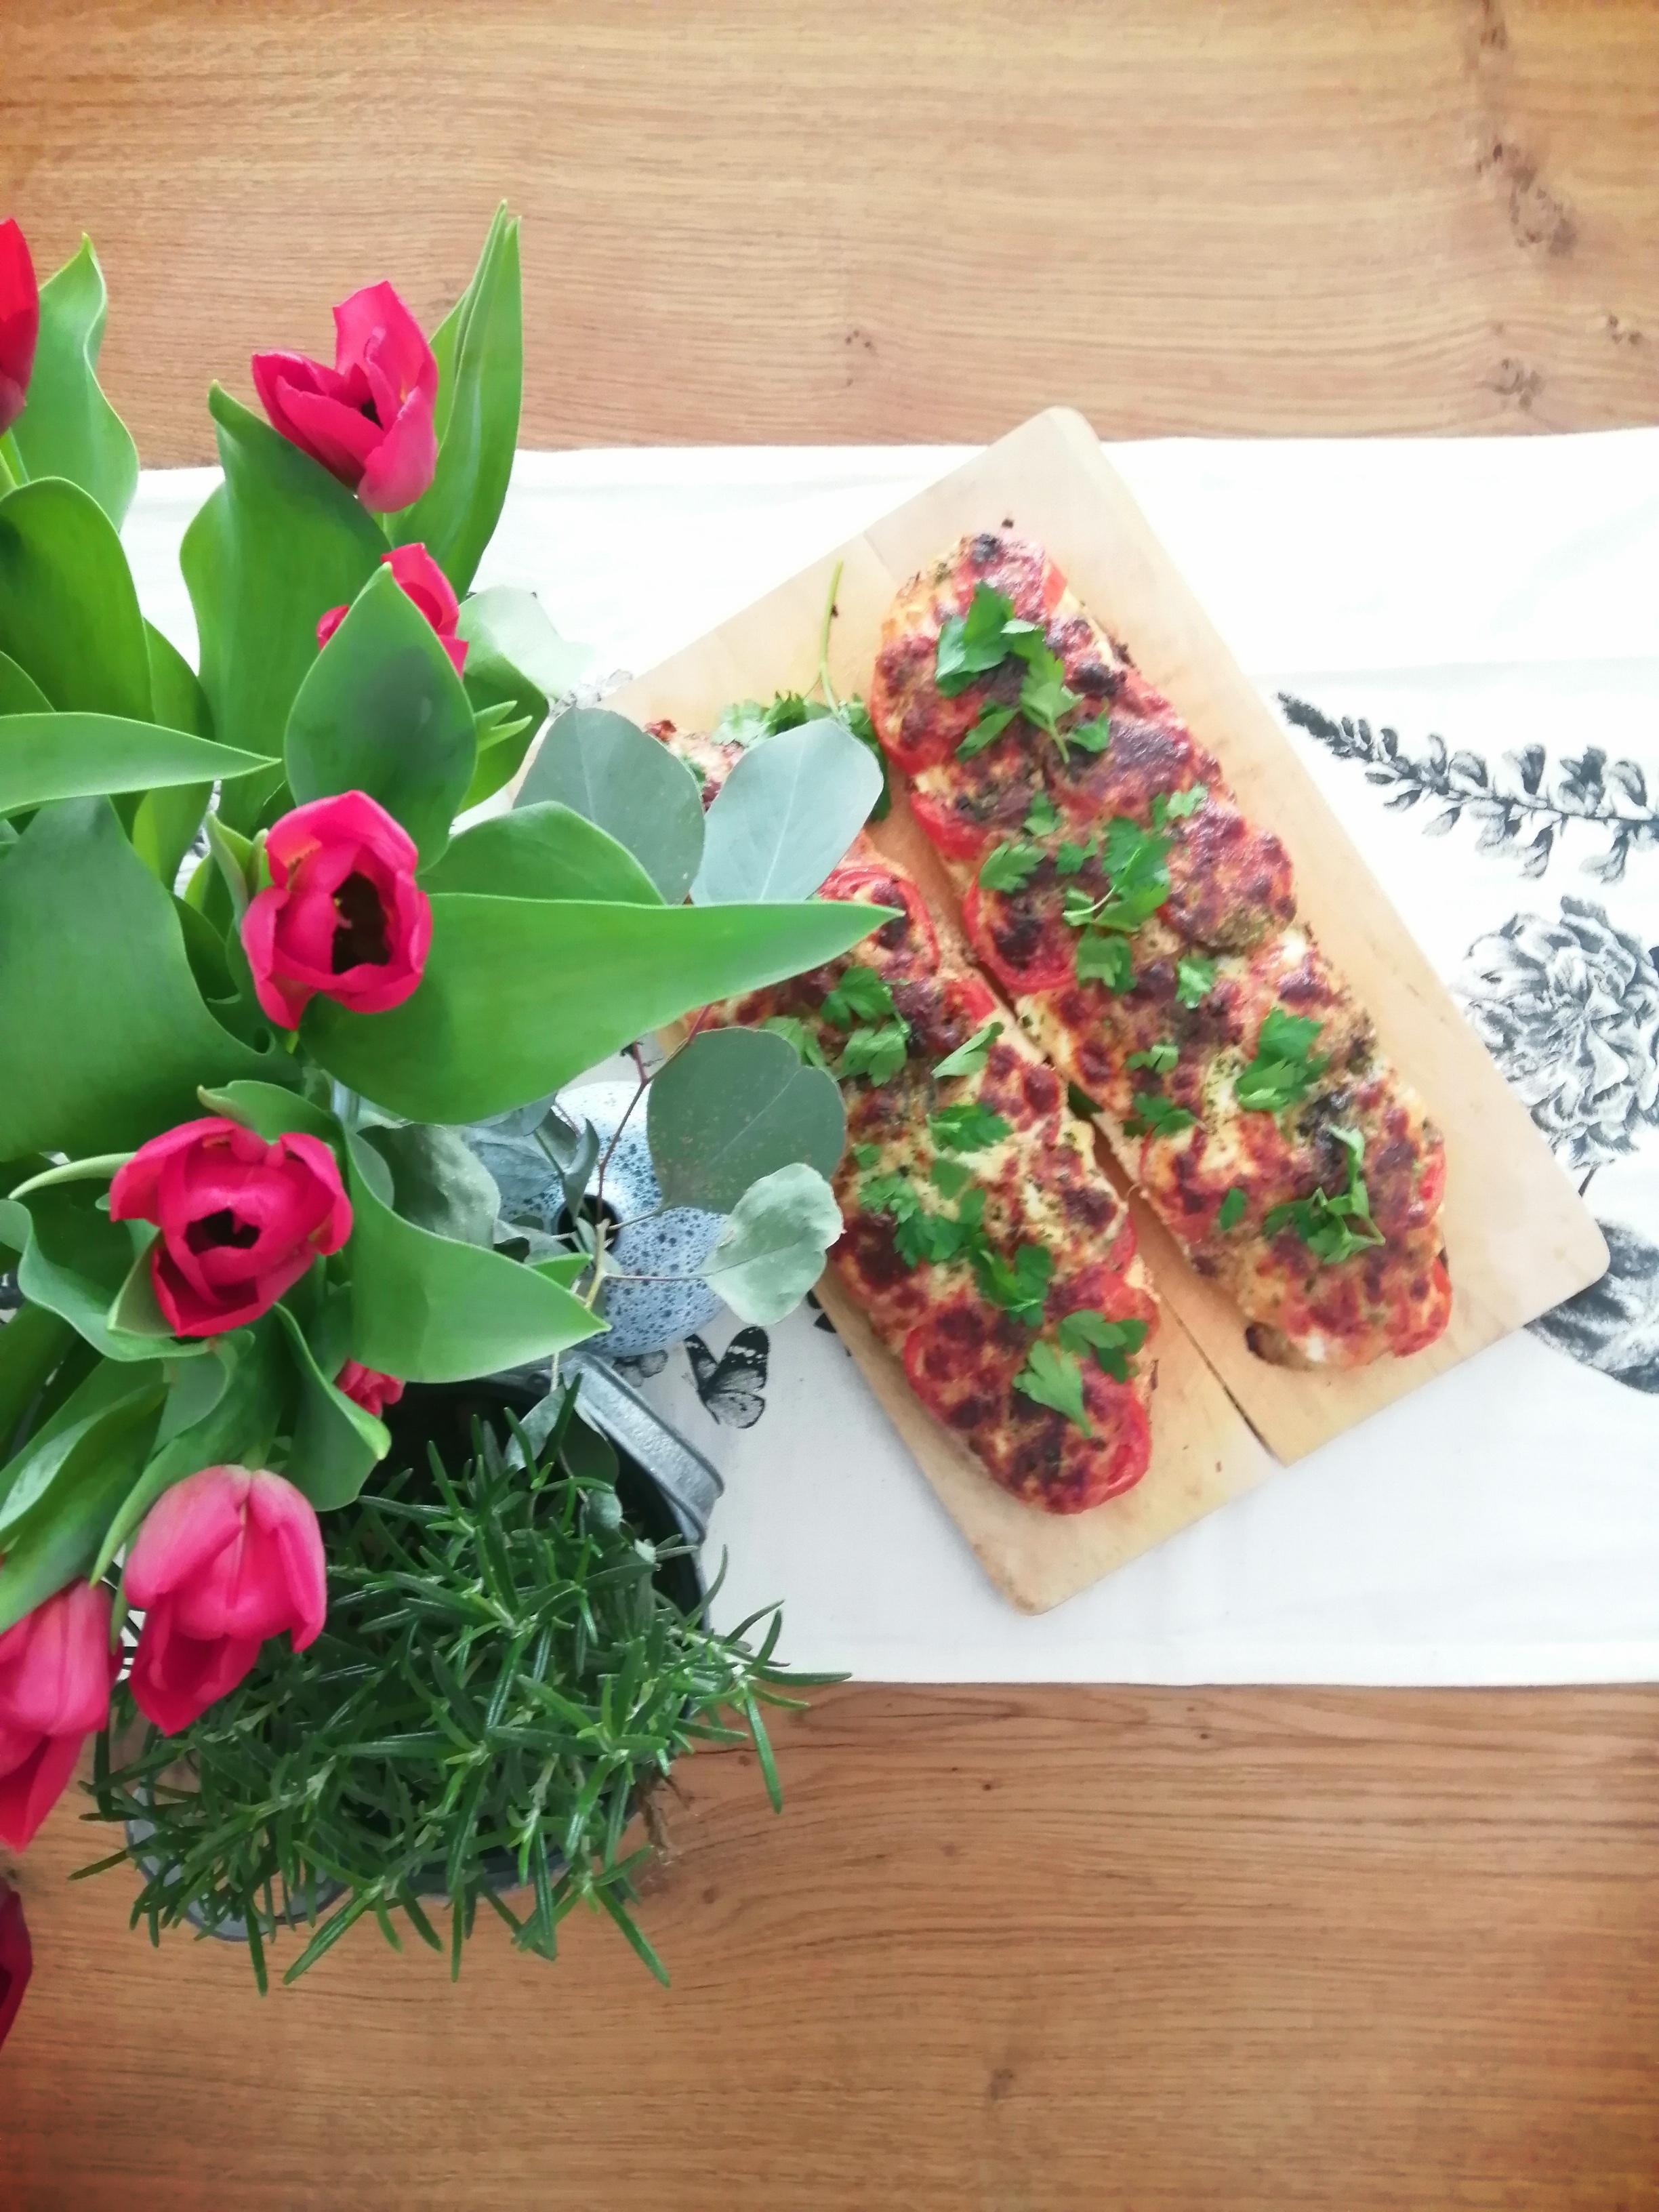 Selbstgemachte Tomatemozarella🍅 Baguette 
#freshflowers #tulpeliebe #food #gedecktertisch #foodpic